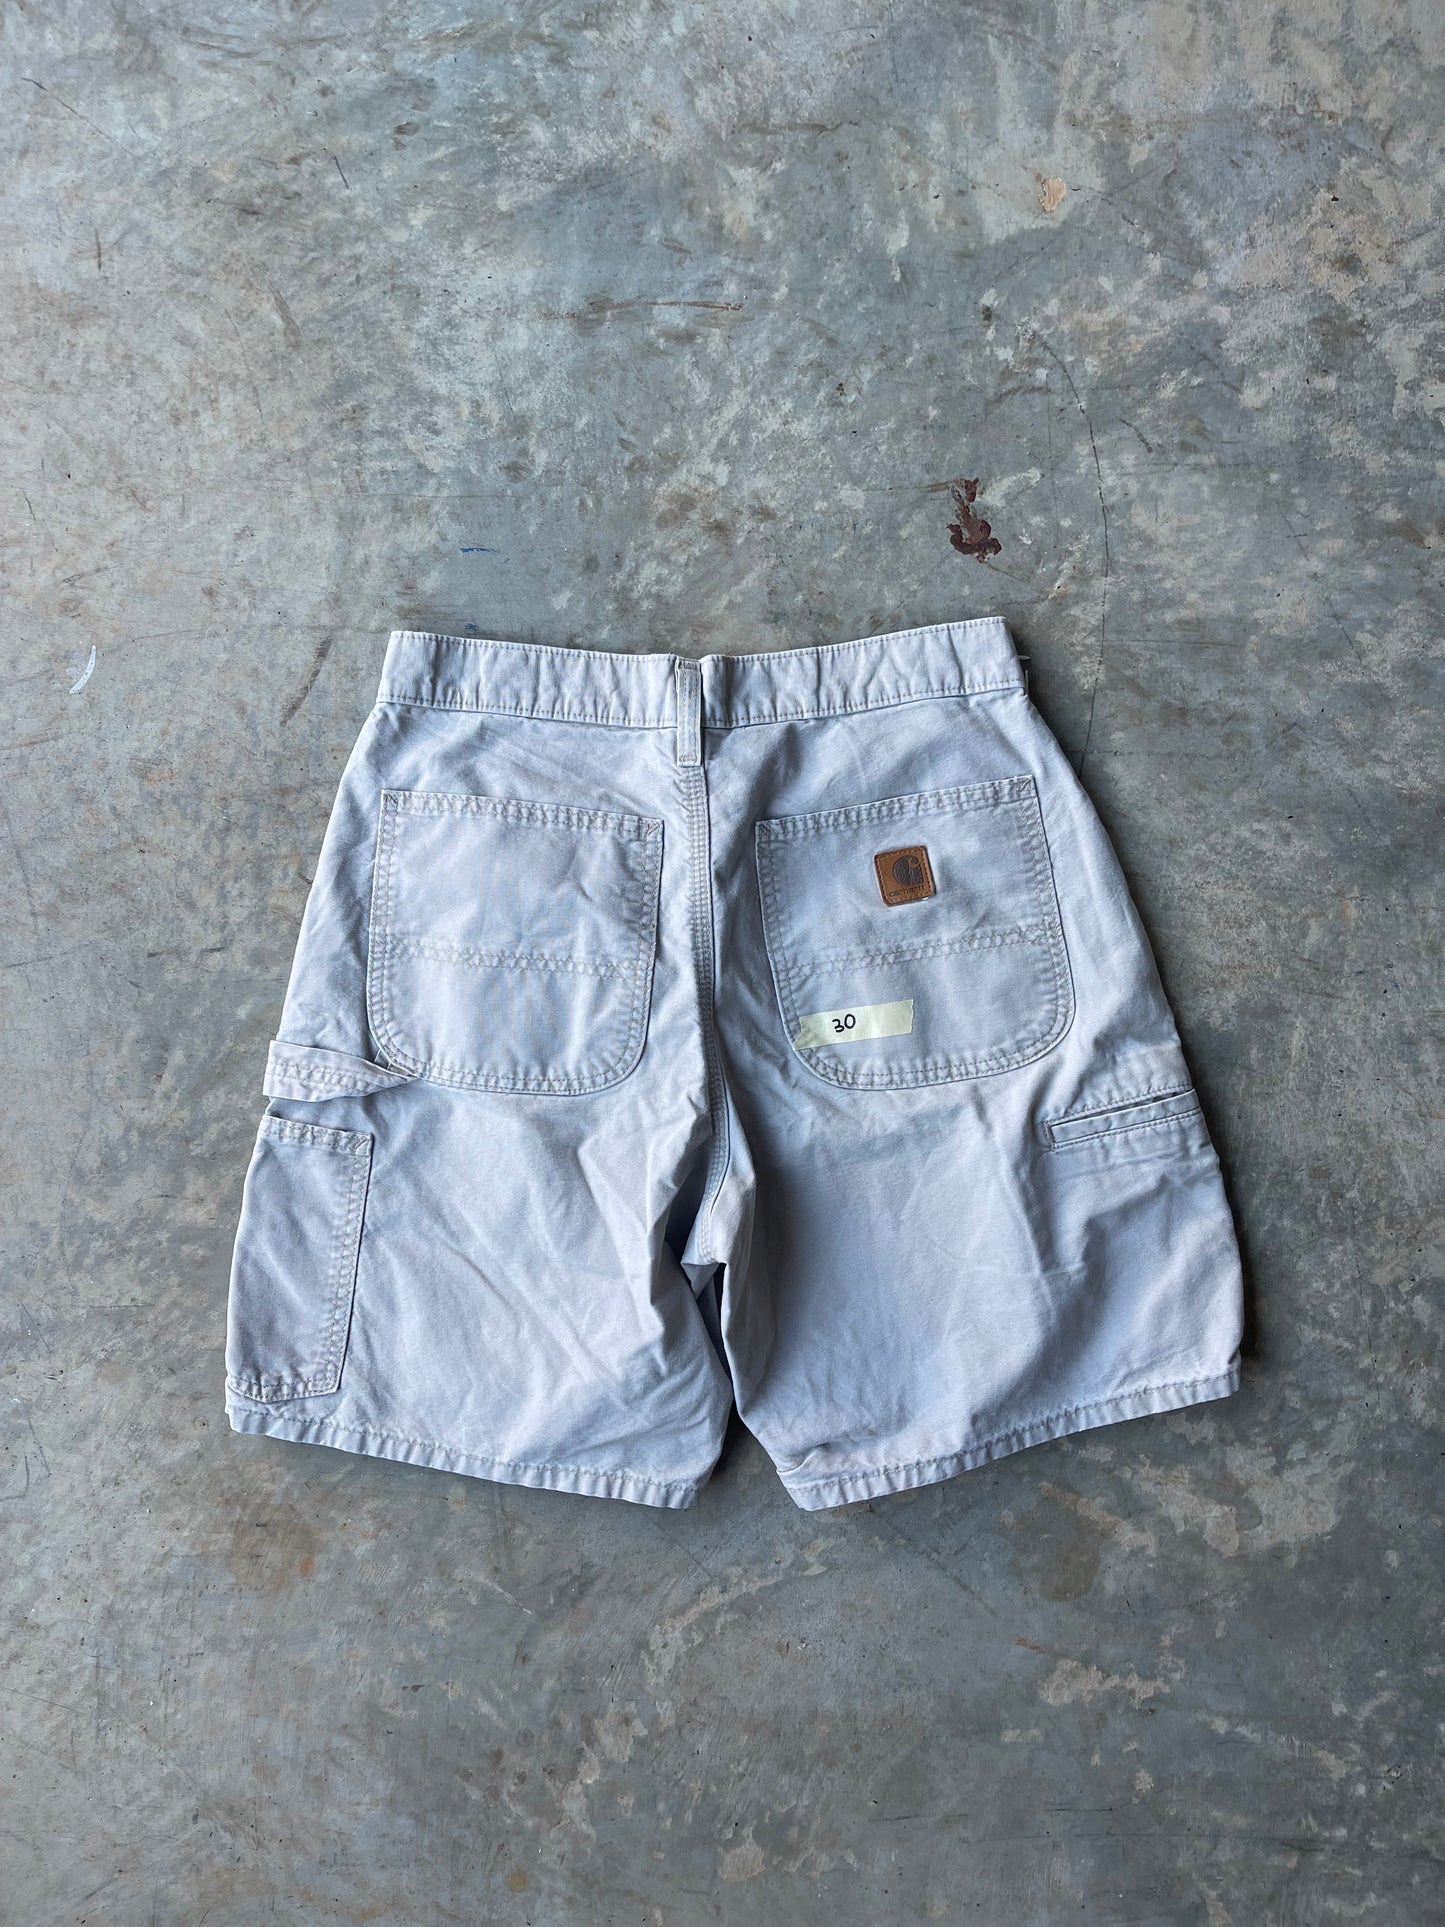 Tan Carhartt Shorts